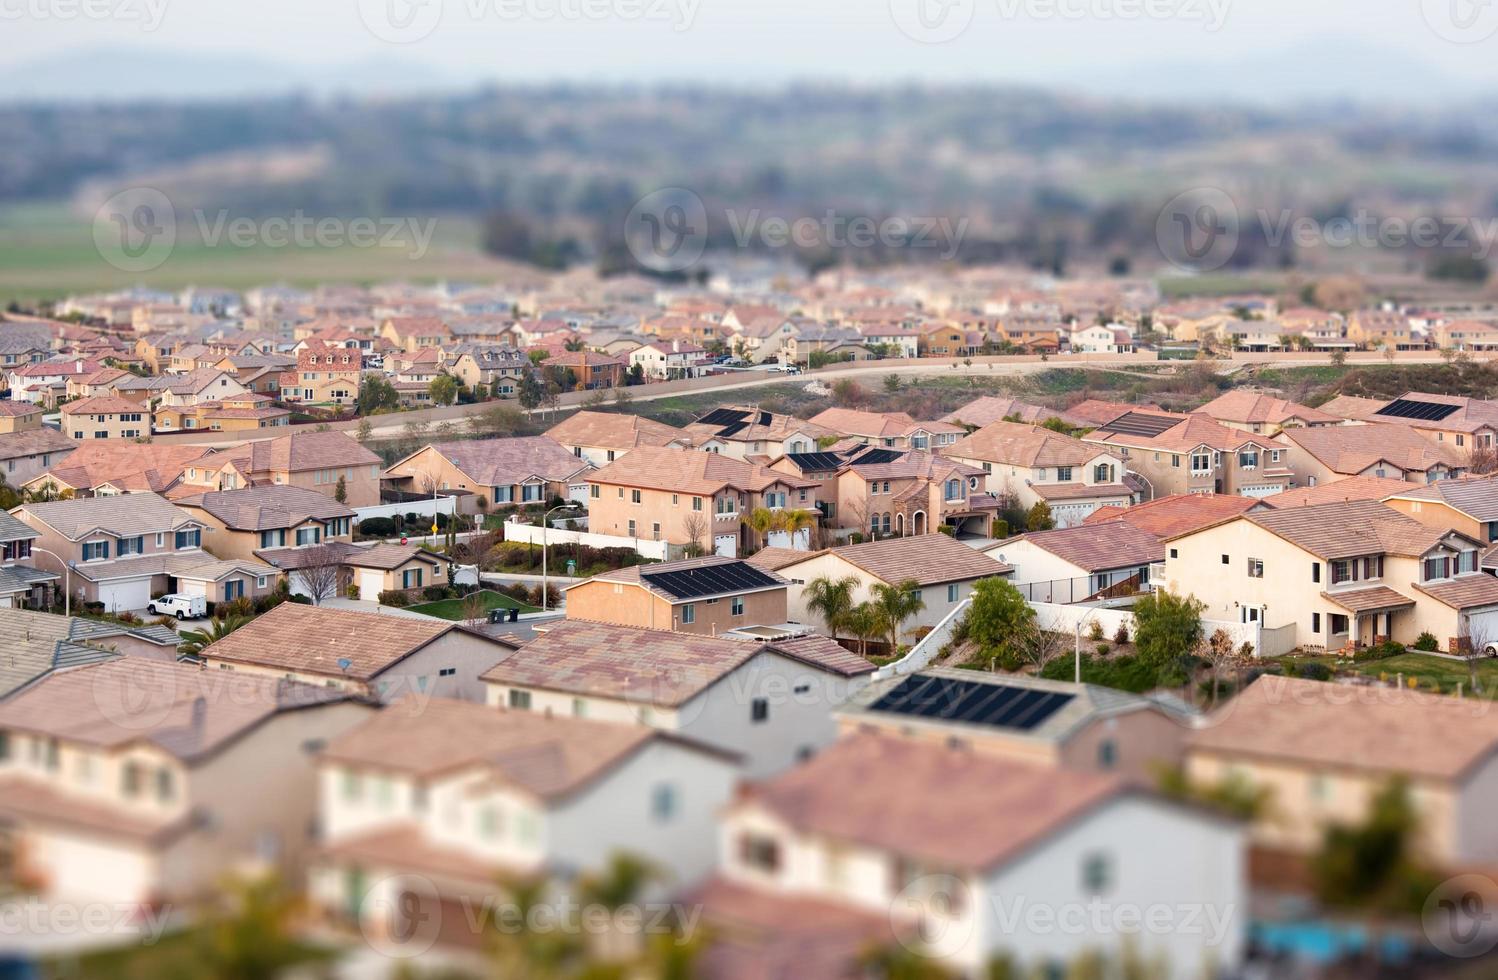 aereo Visualizza di popolato neigborhood di case con tilt-shift sfocatura foto